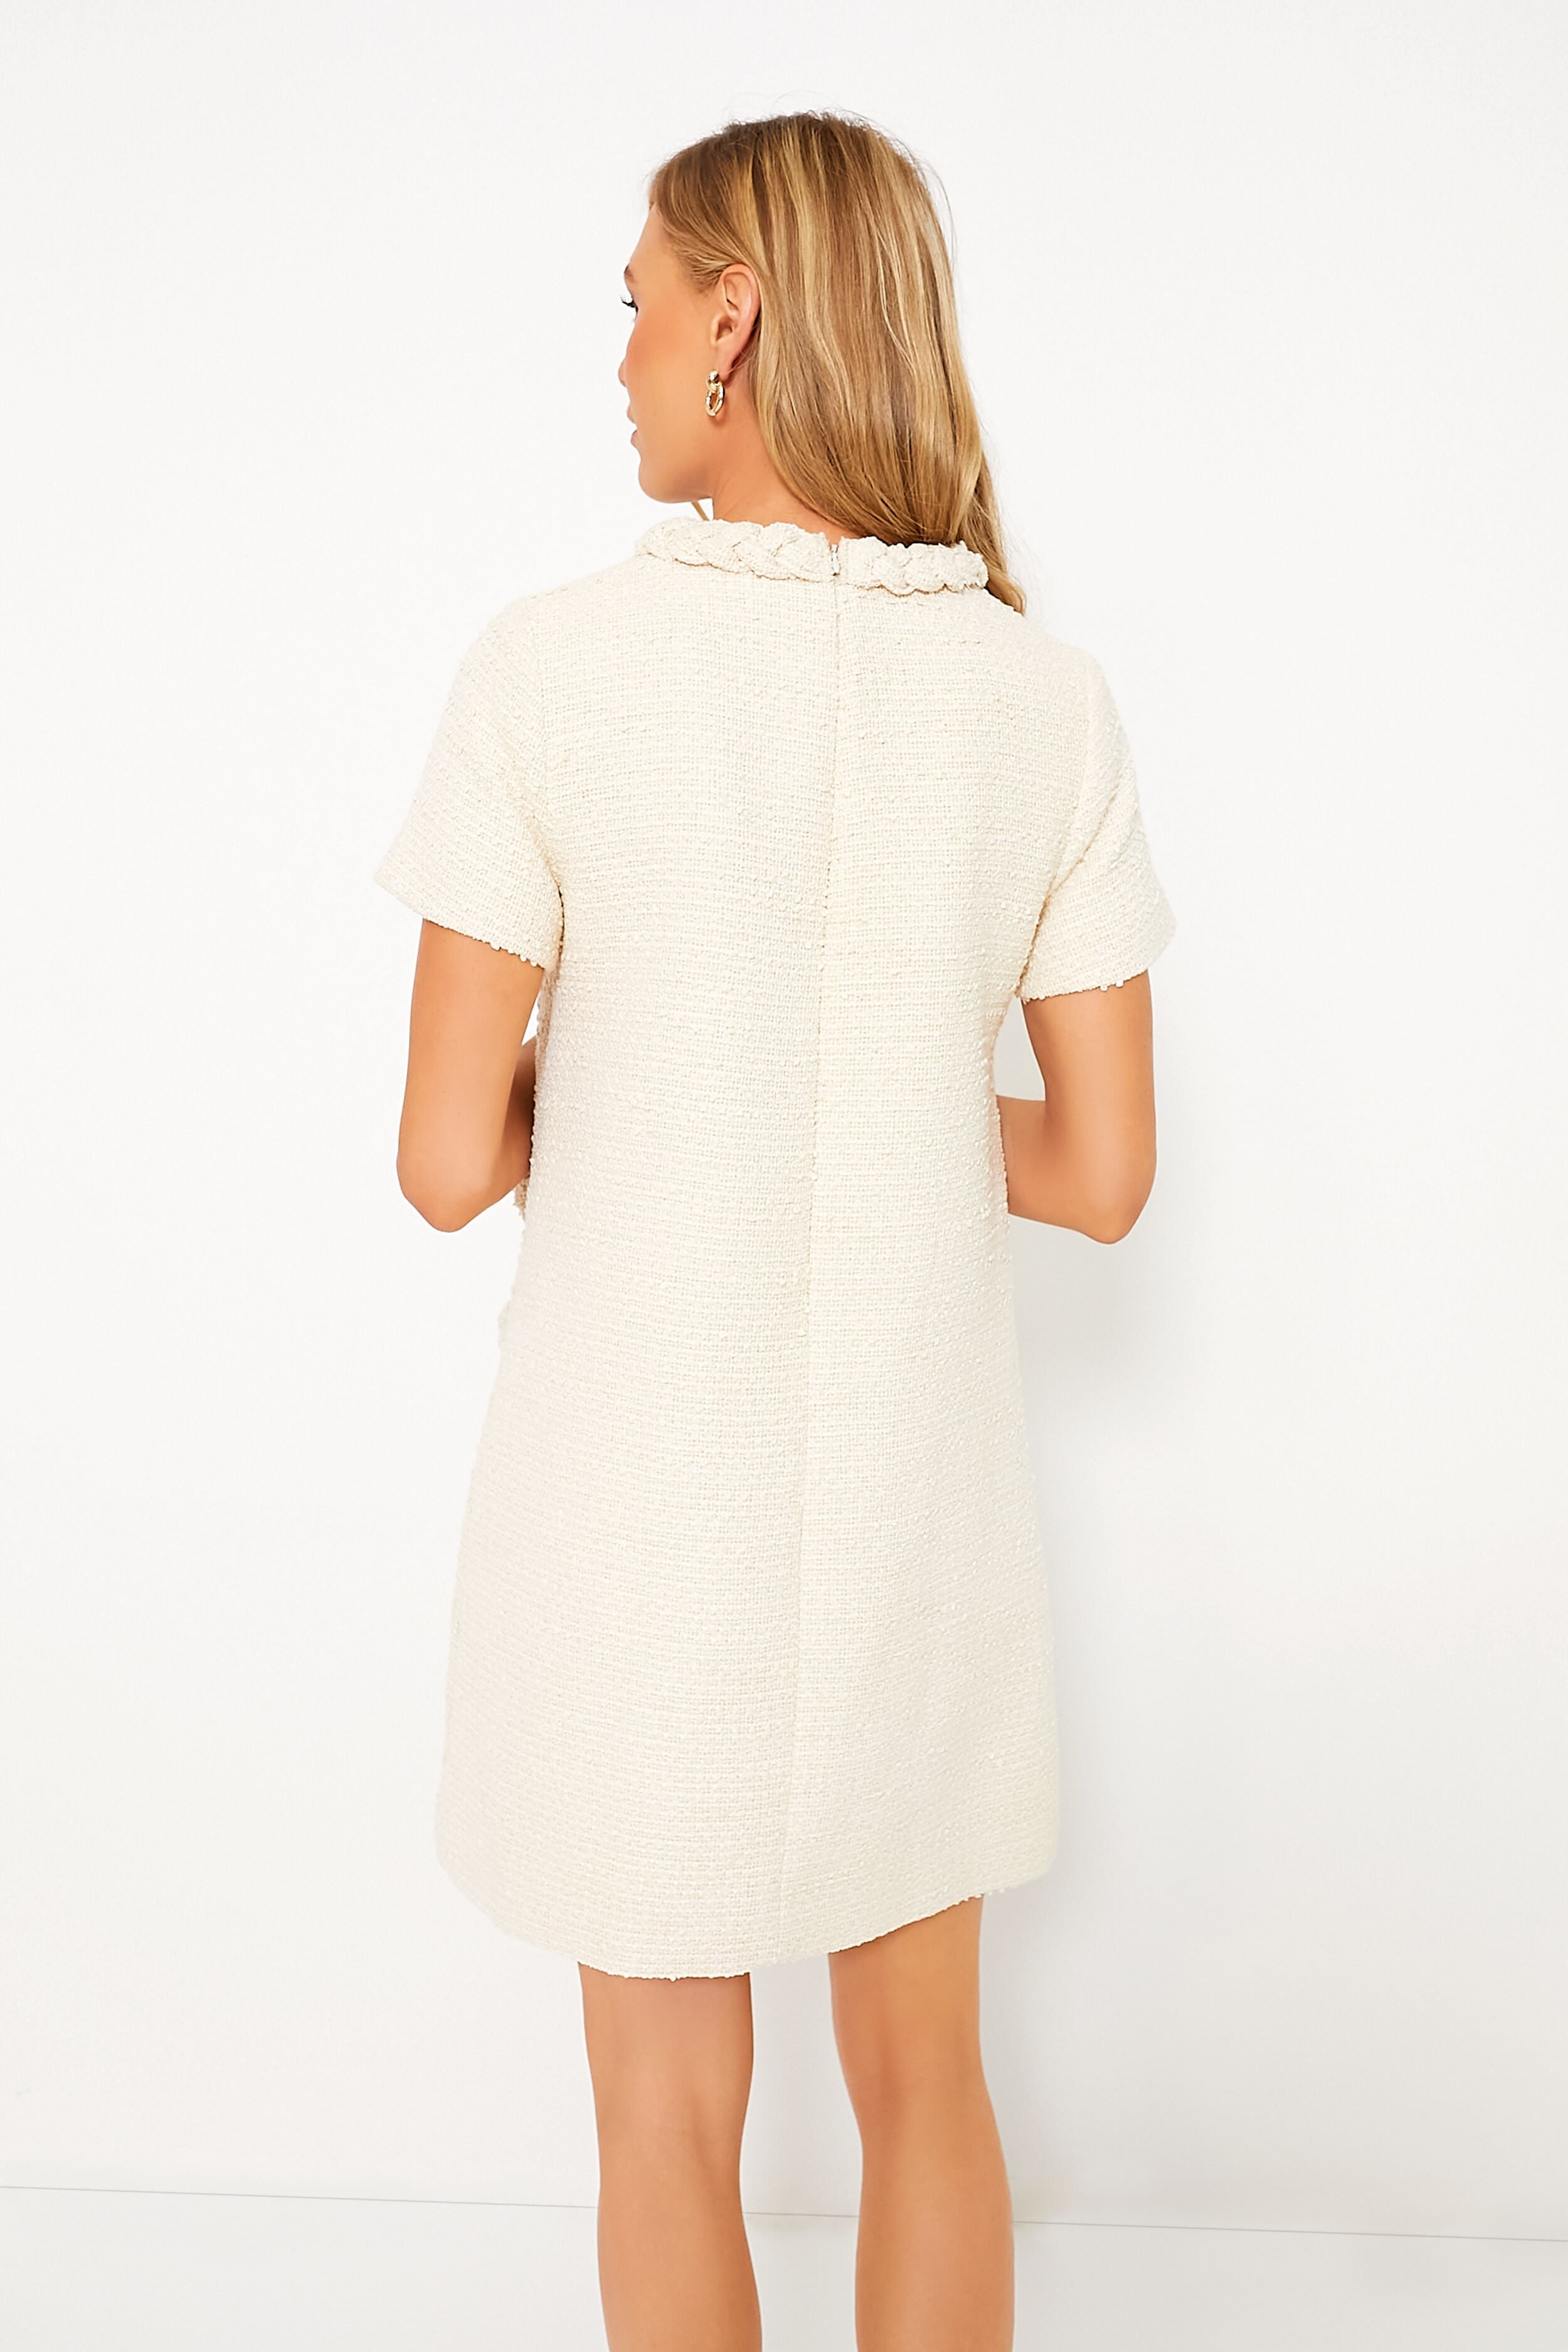 Pearl White Tweed Jackie Dress | Tuckernuck